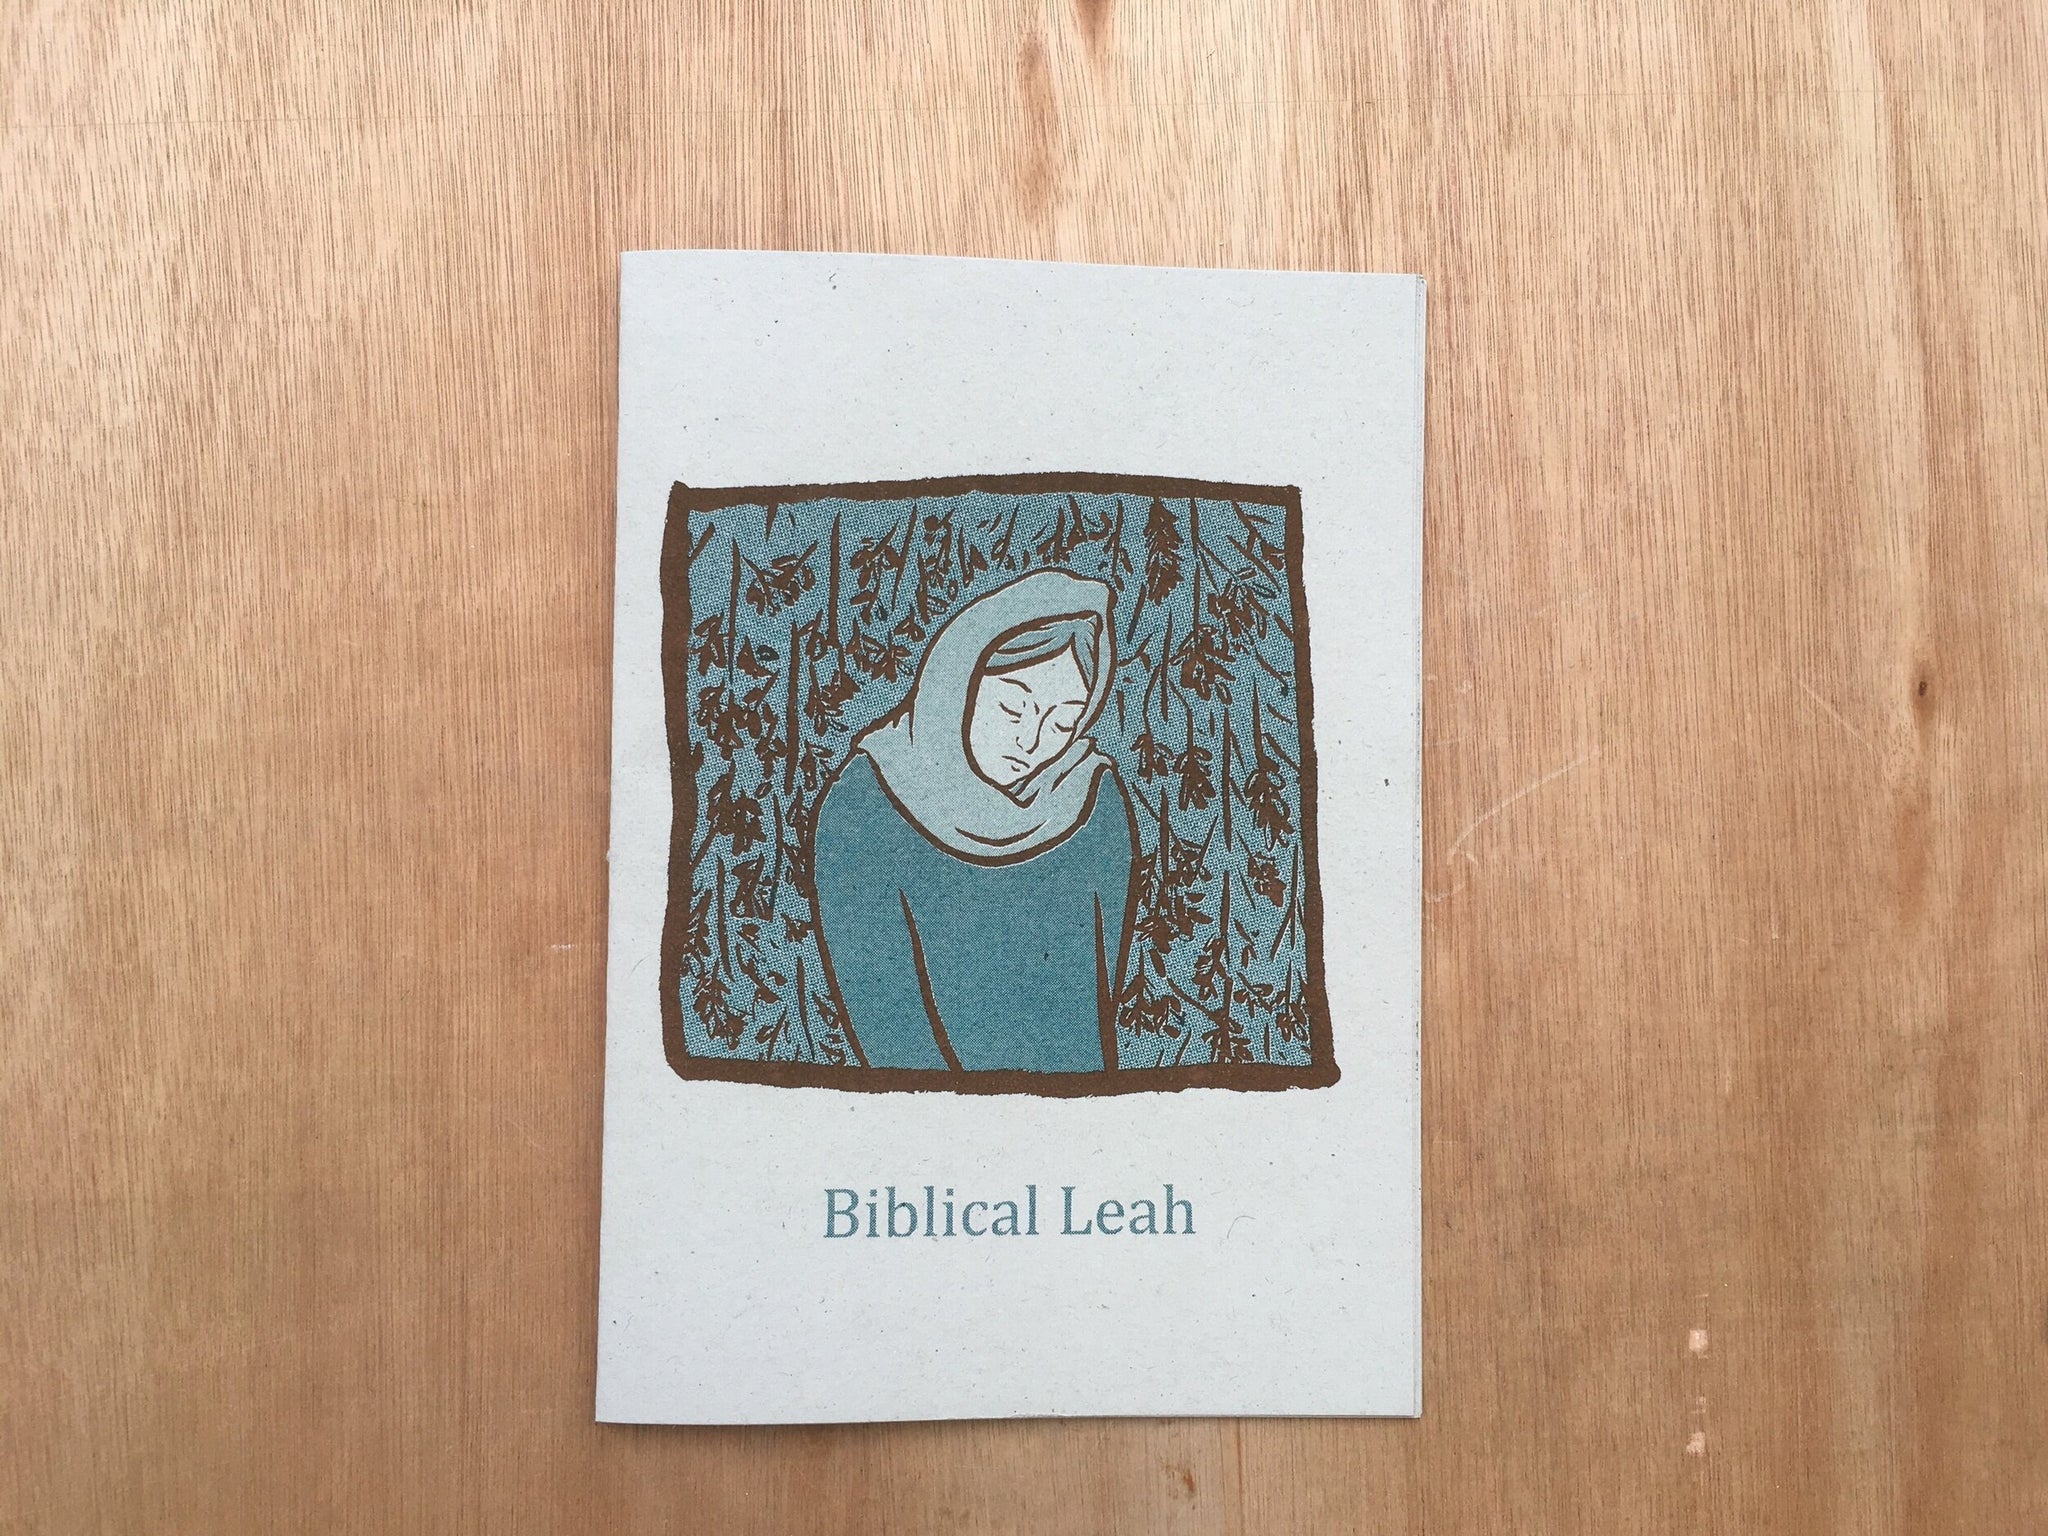 BIBLICAL LEAH by Leah Cameron